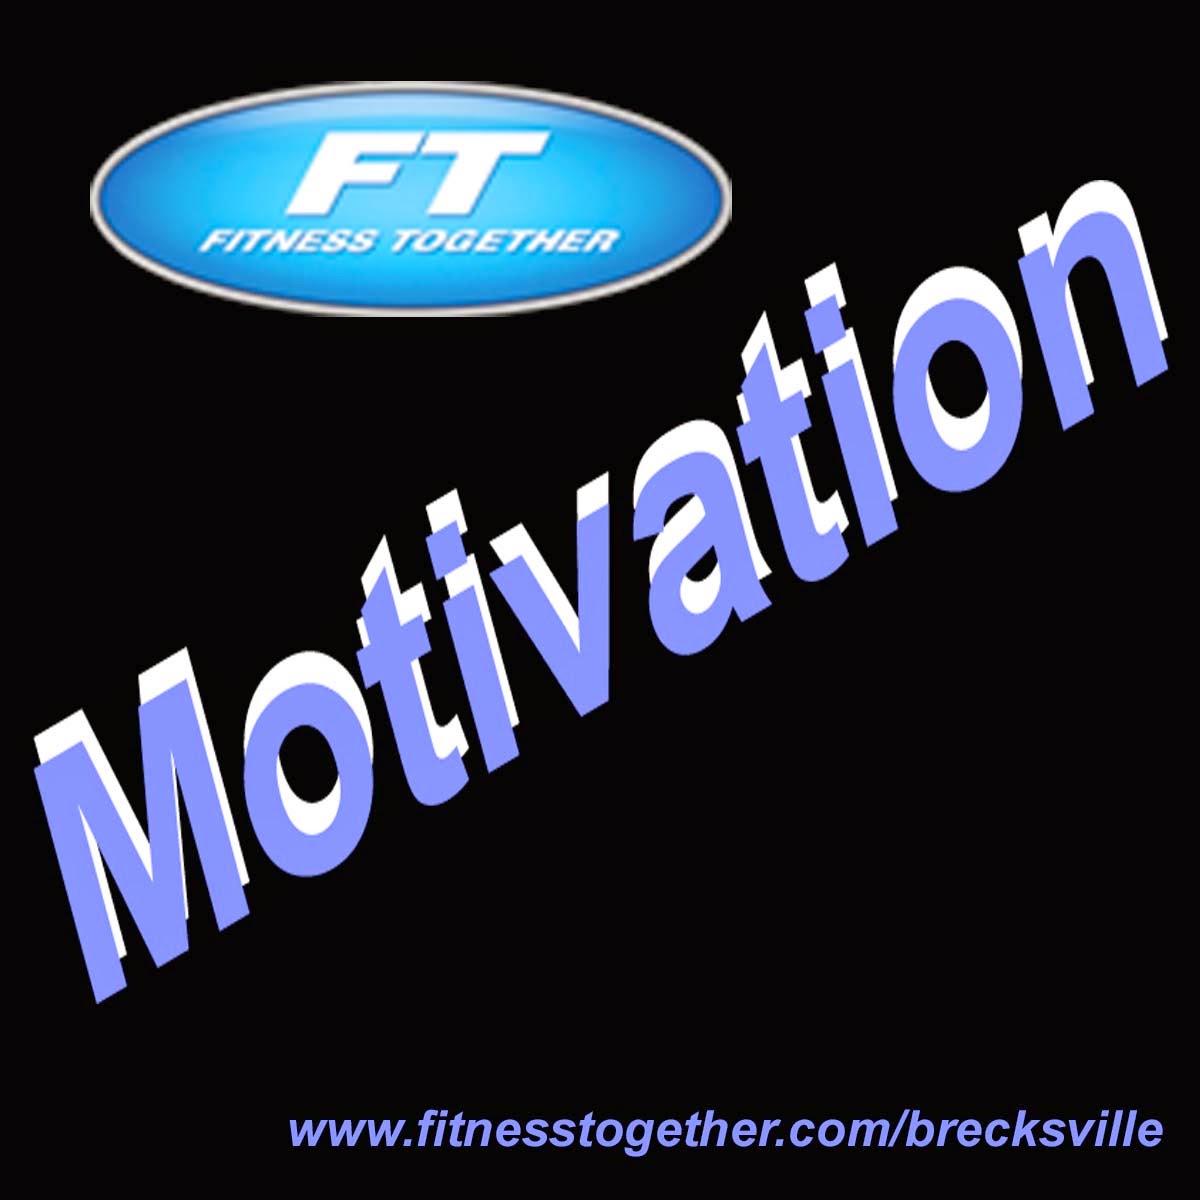 http://www.fitnesstogether.com/brecksville